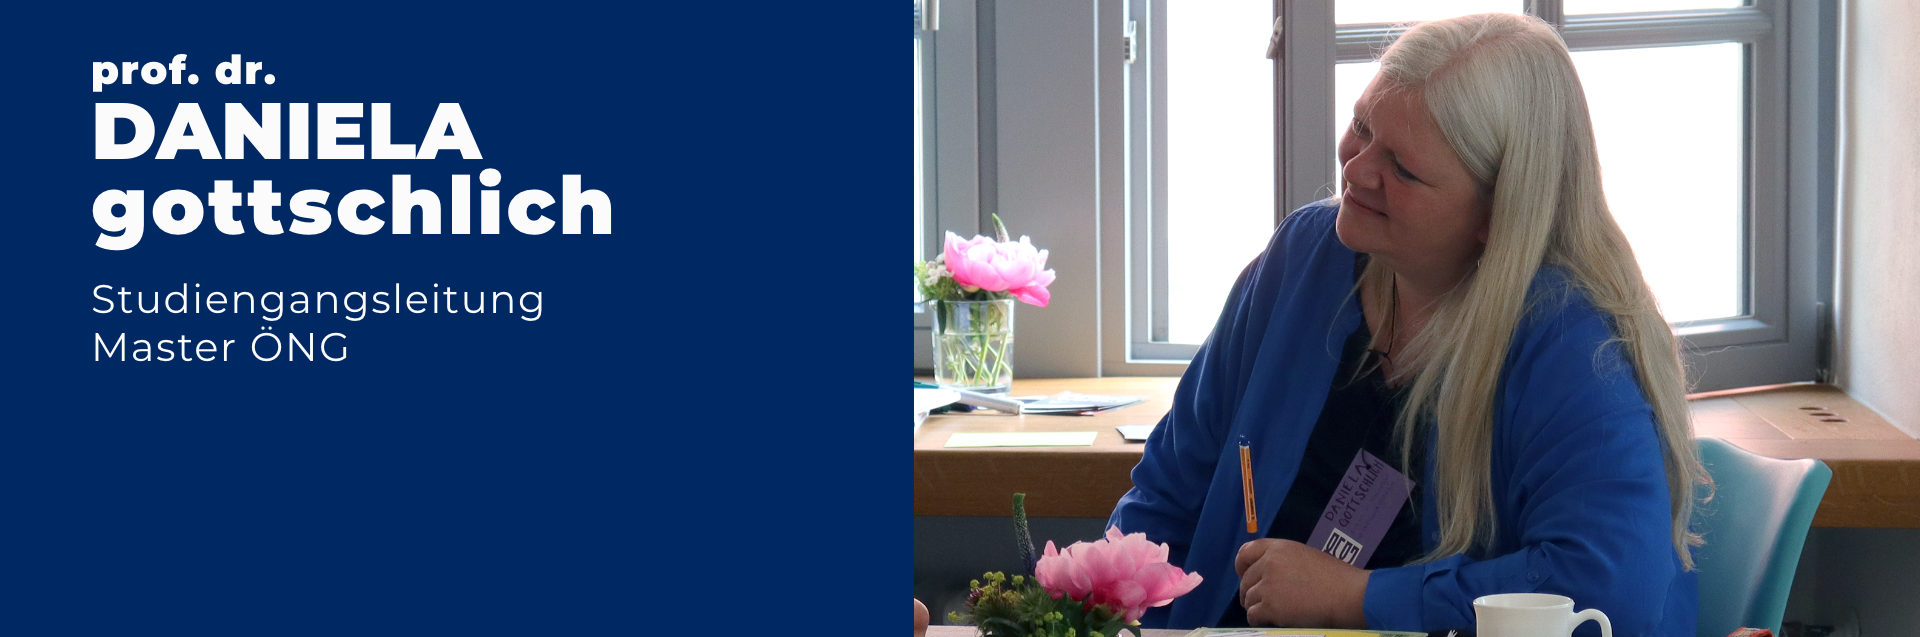 Professorin Doktorin Daniela Gottschlich ist Studiengangsleiterin des Masters Ökonomie - Nachhaltigkeit - Gesellschaftsgestaltung. Sie sitzt an einem Tisch, auf dem rosa Blumen stehen, und lächelt. Sie trägt eine blaue Bluse und hat weiße lange Haare.